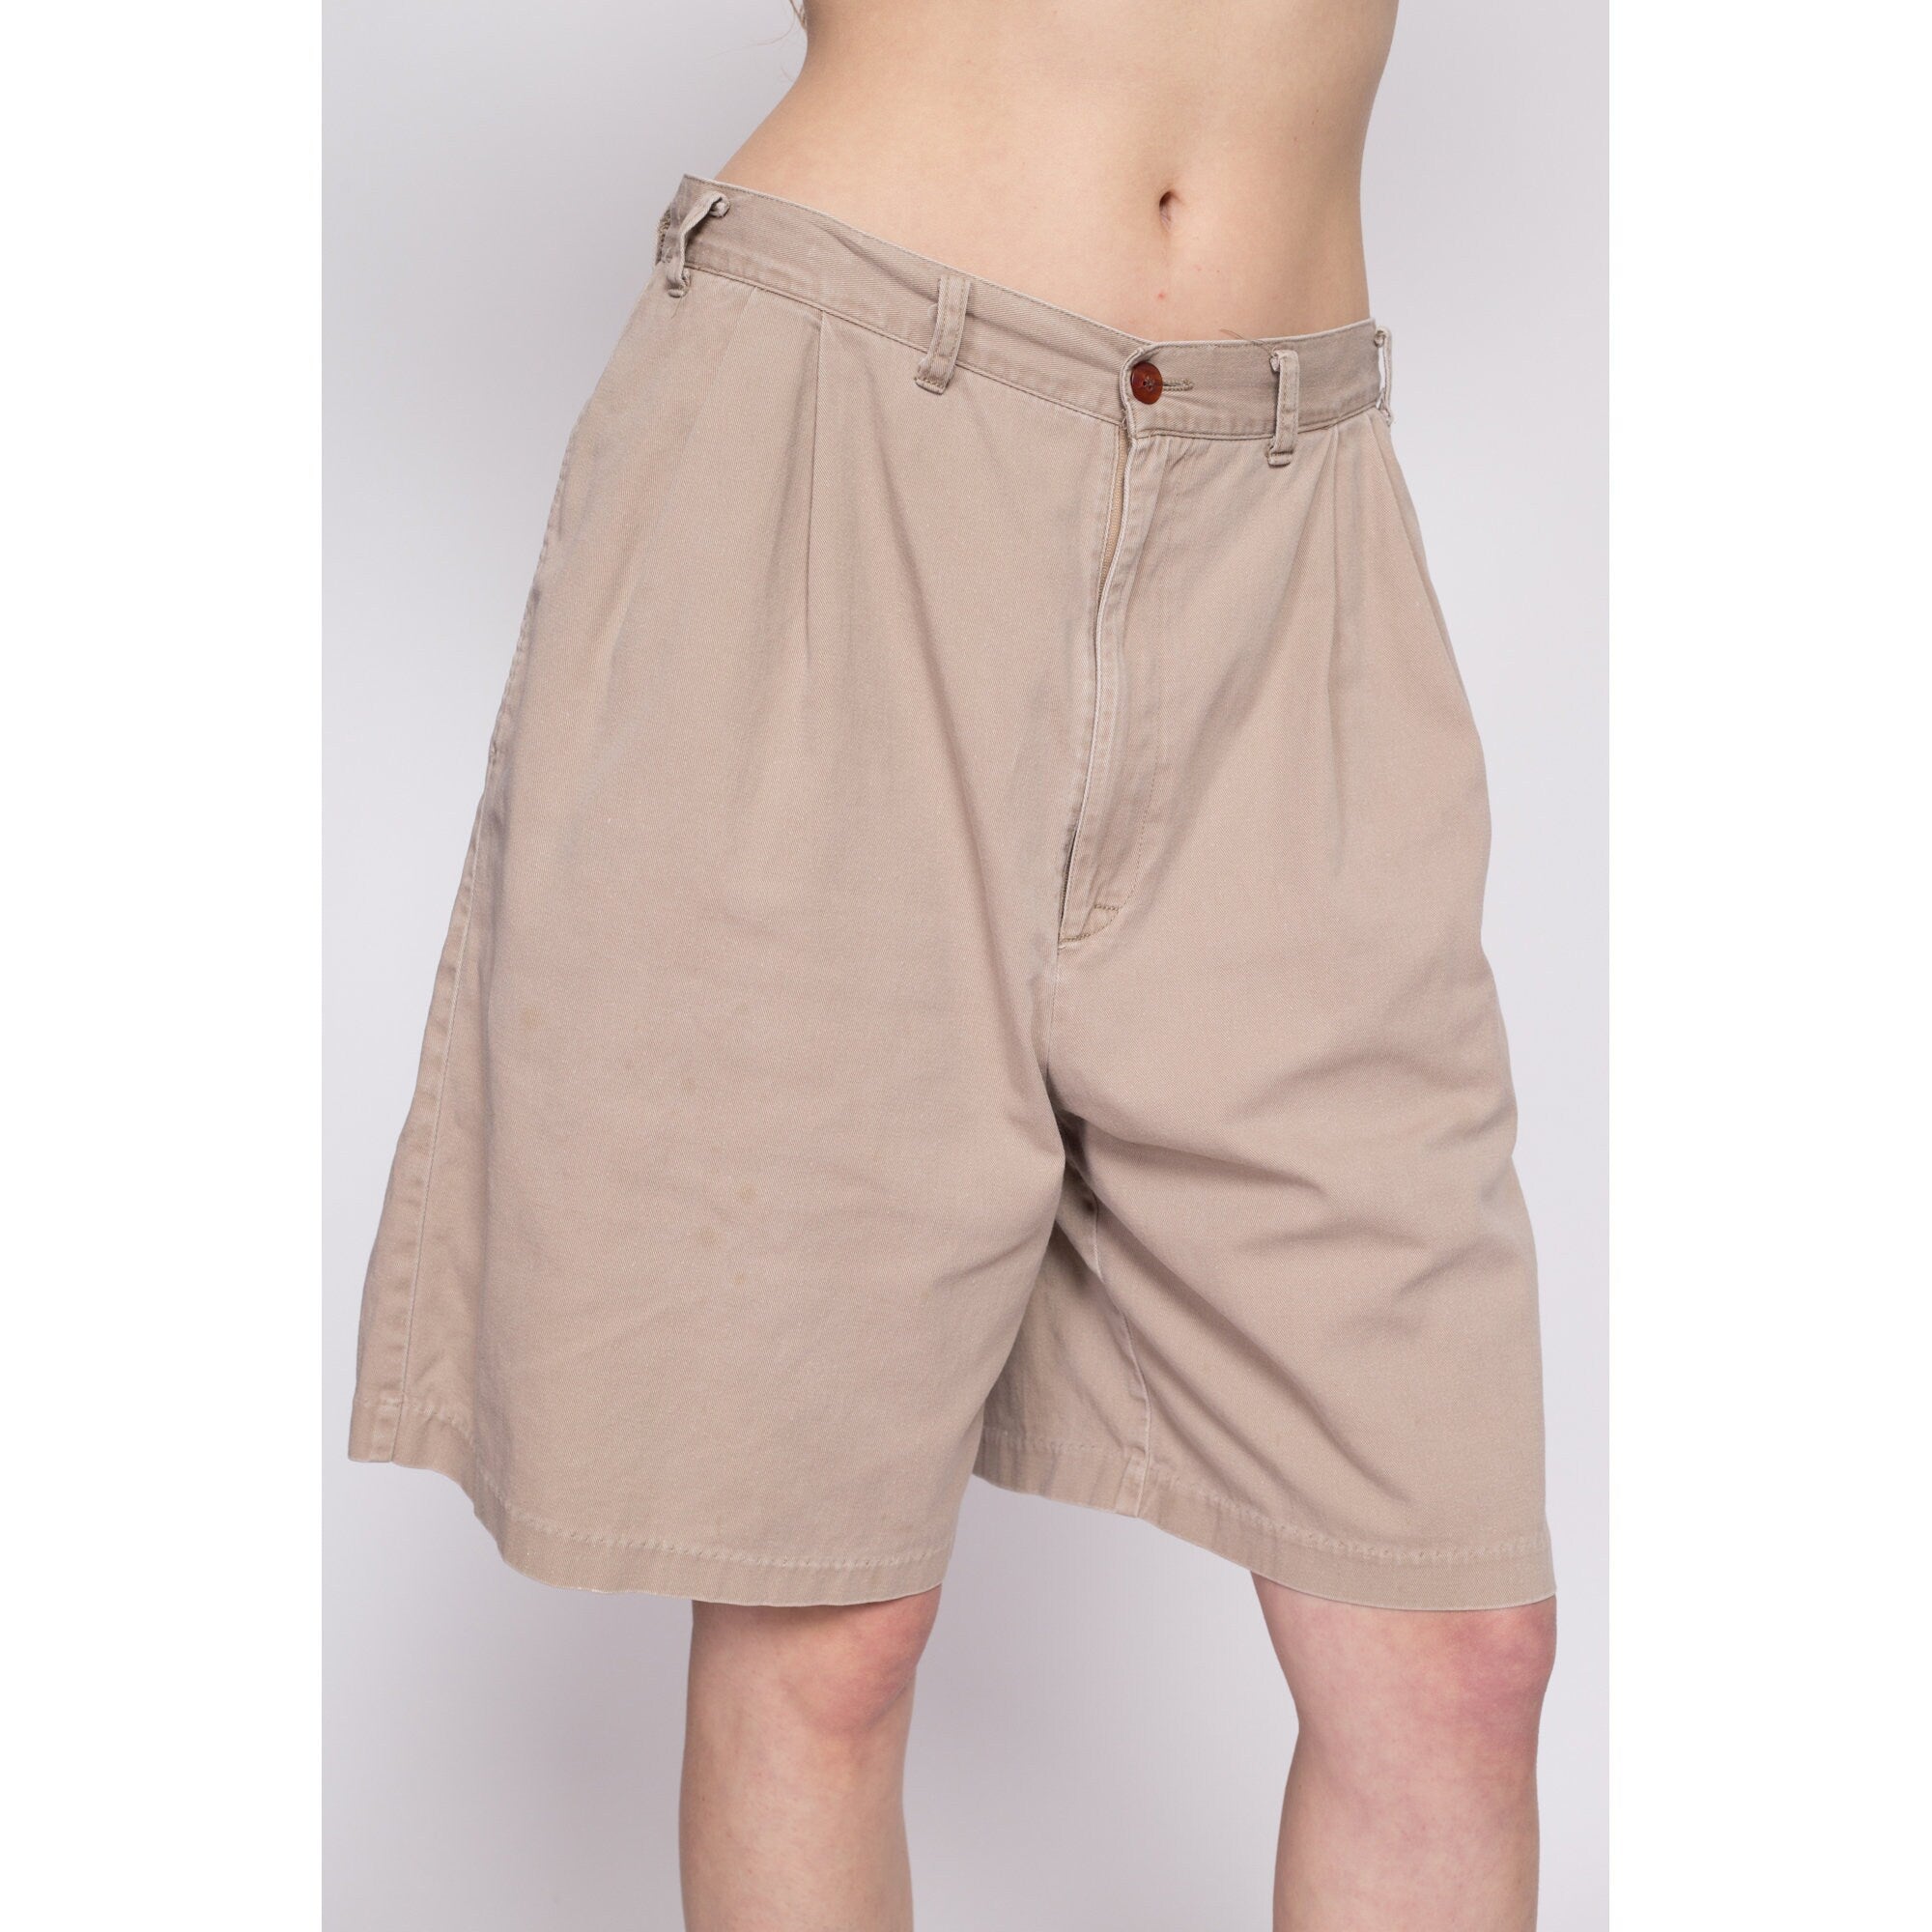 80s Khaki Pleated Cotton Shorts - Large, 31